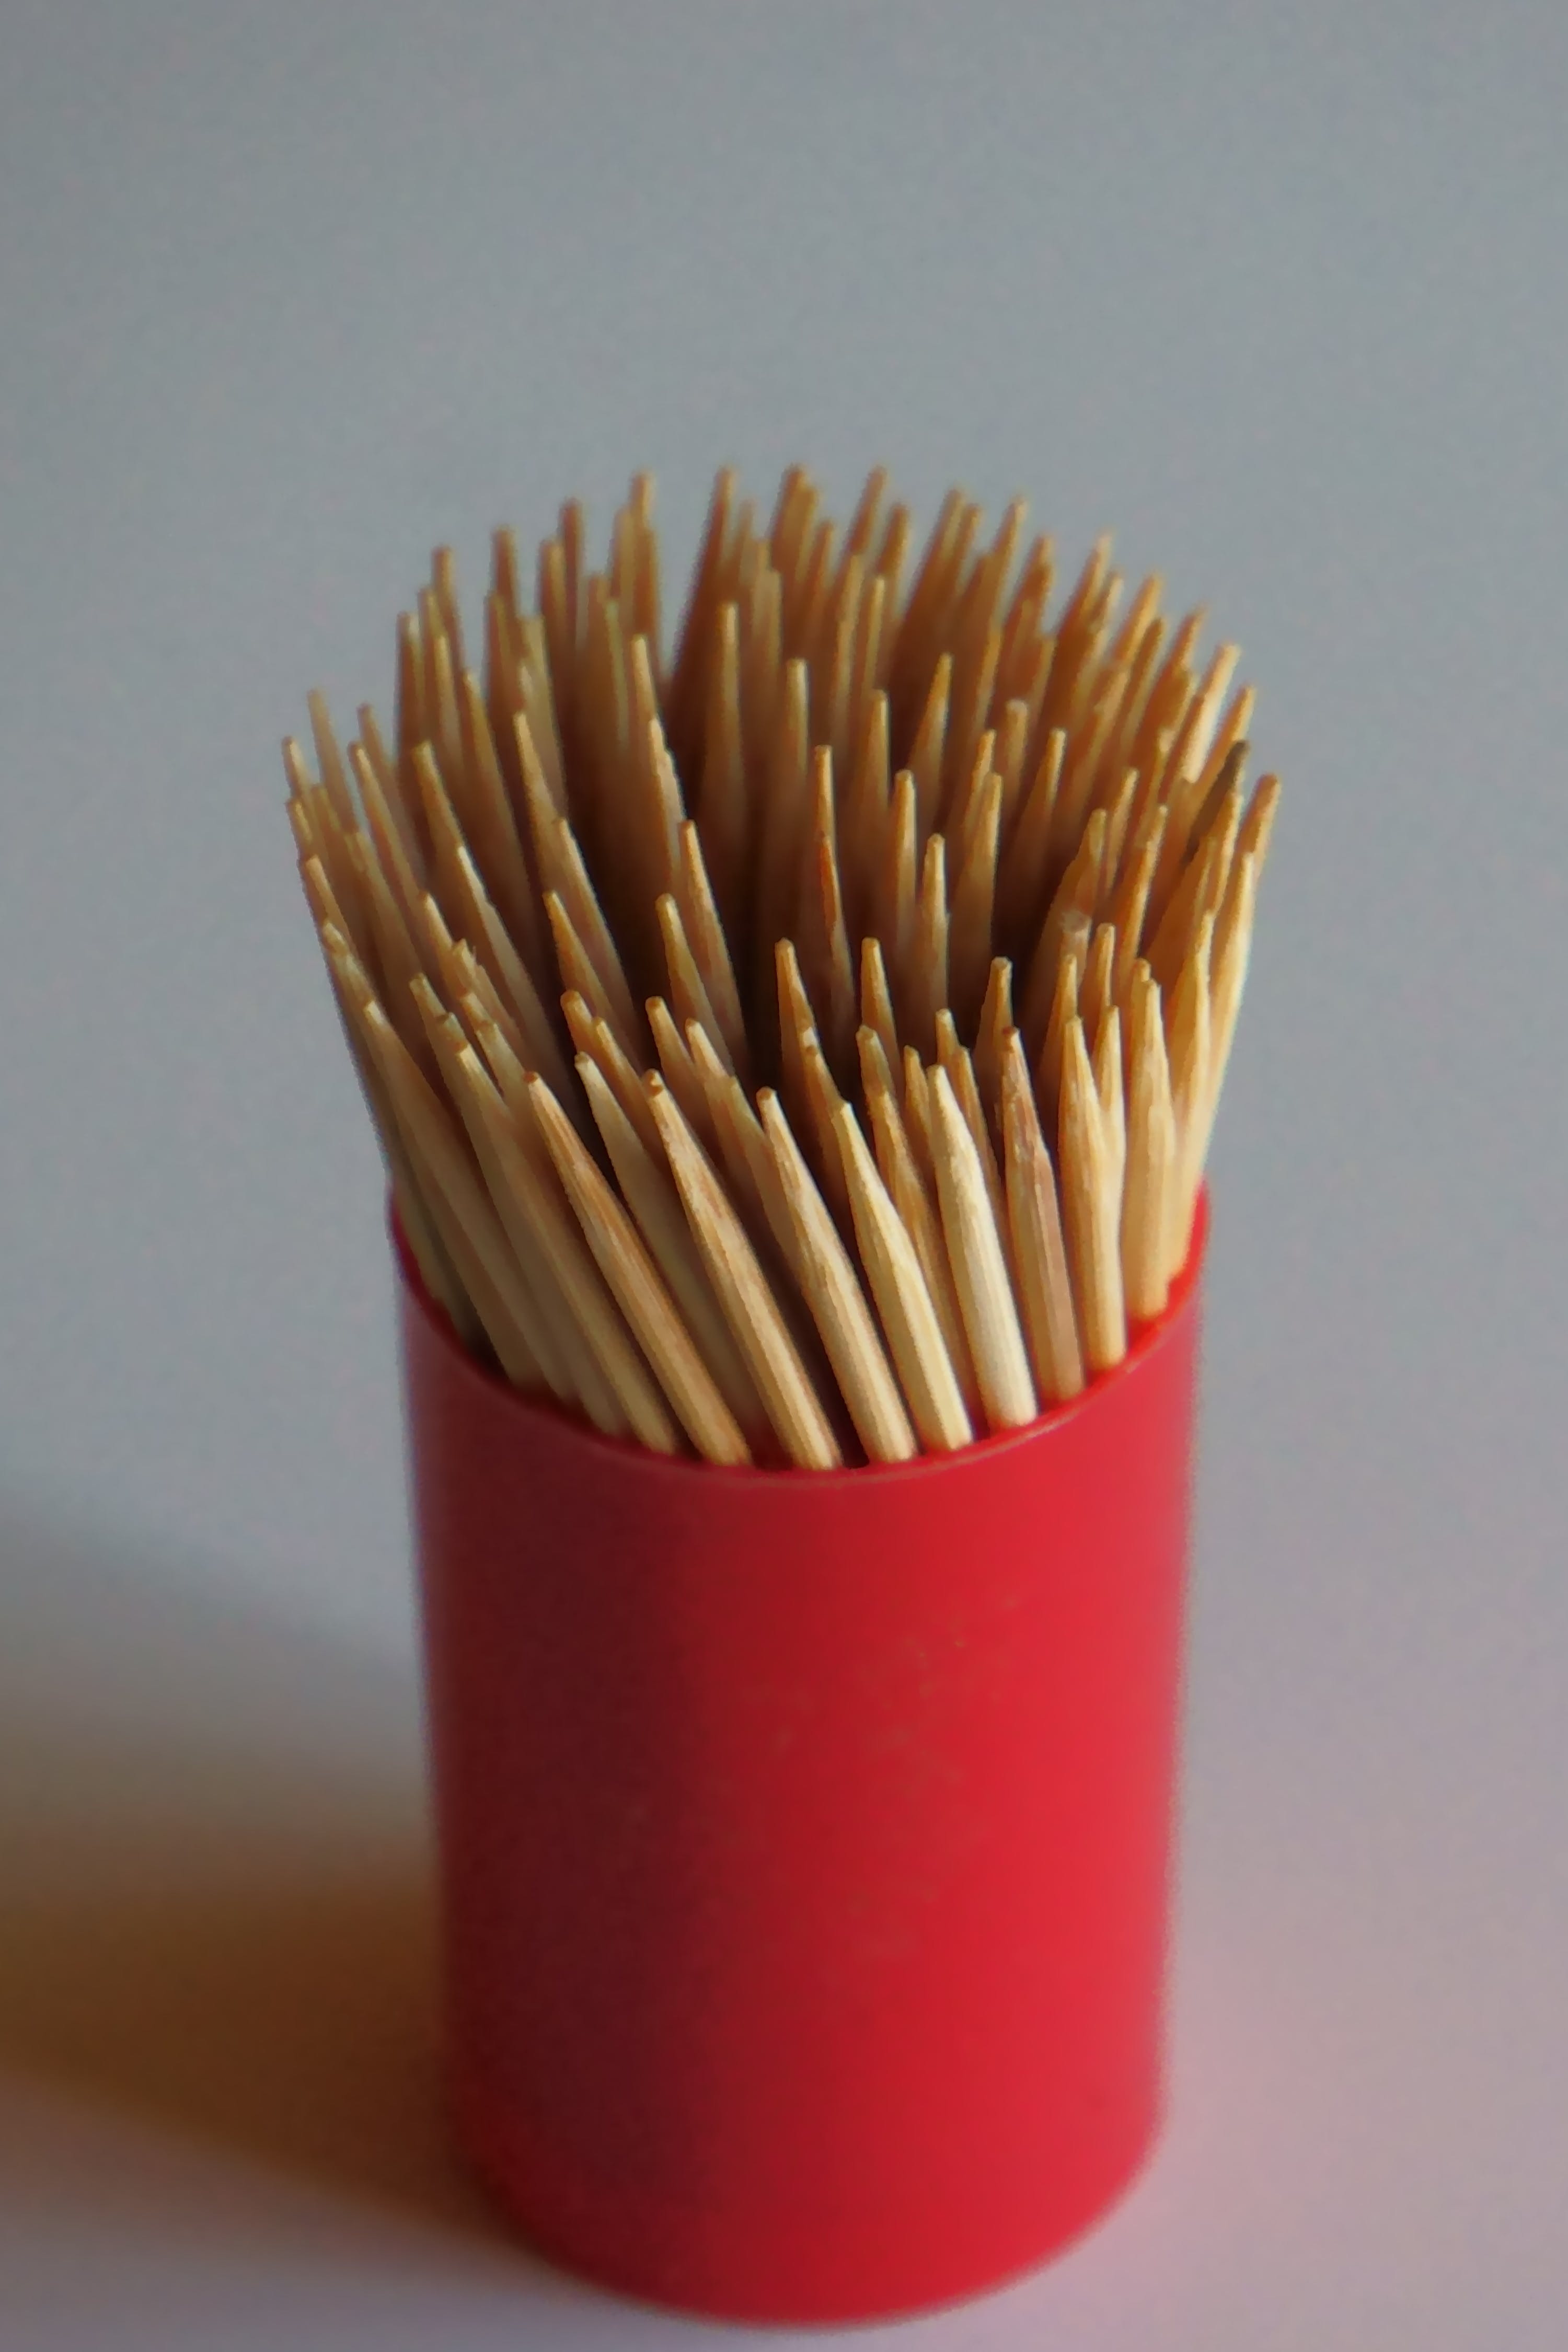 Toothpicks | Source: Pexels